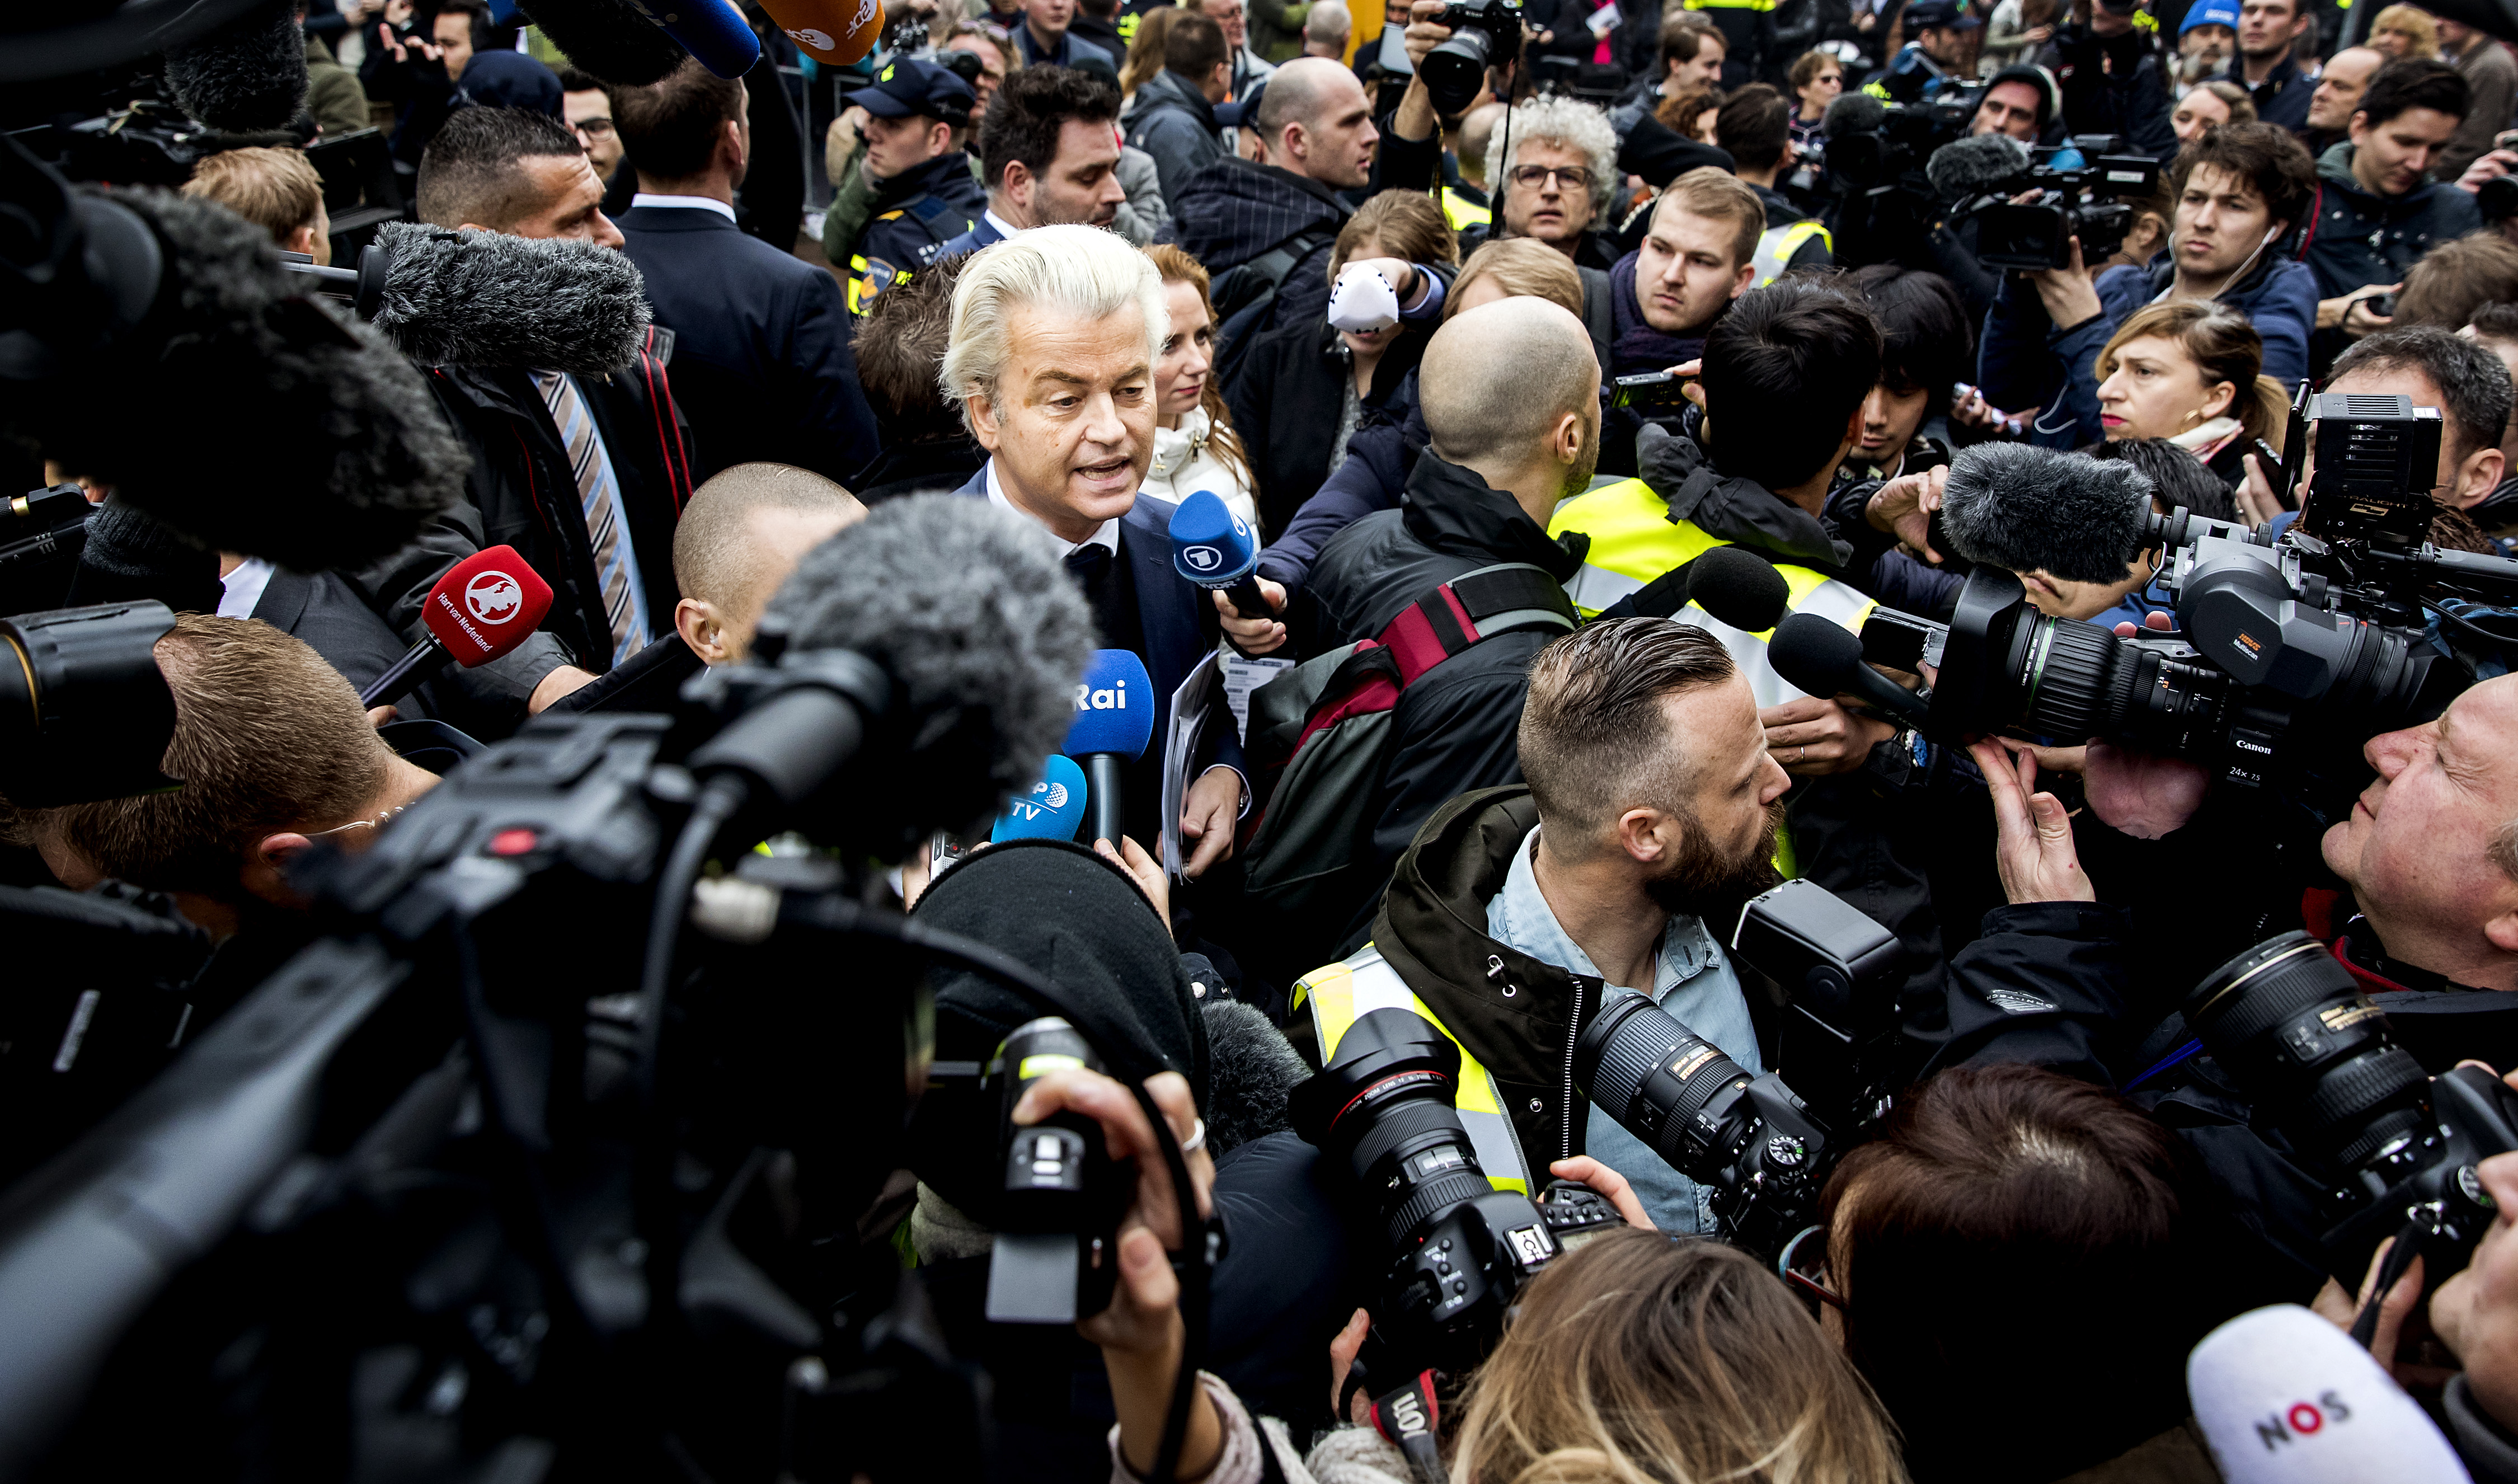 2017-02-18 12:09:27 SPIJKENISSE - Media verdringen zich rond PVV-leider Geert Wilders die flyers uitdeelt in het centrum van Spijkenisse. De Partij voor de Vrijheid trapt hier de campagne voor de Tweede Kamerverkiezingen af. ANP KOEN VAN WEEL